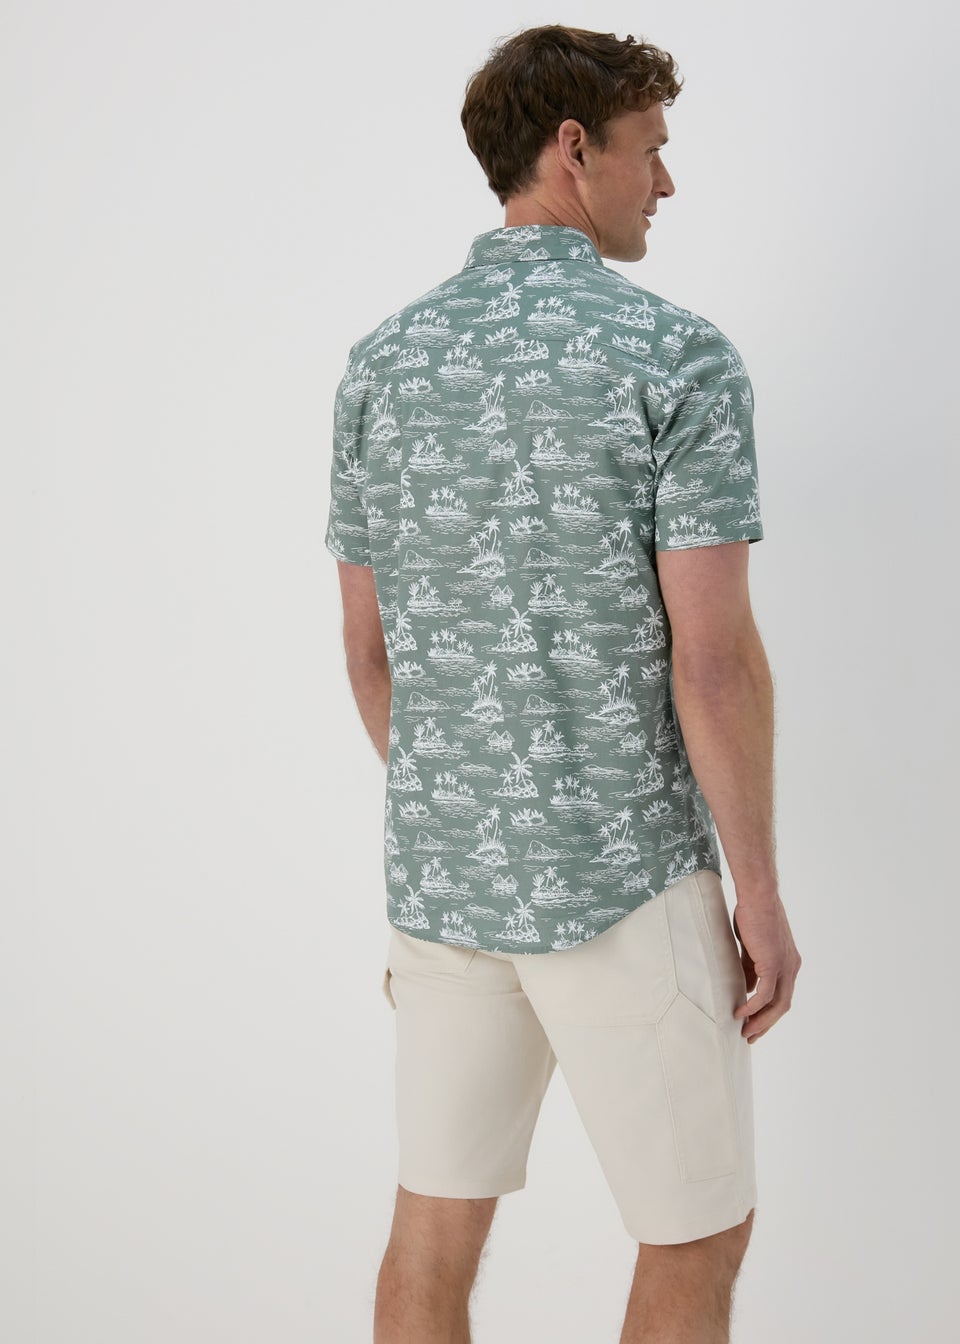 Khaki Island Print Short Sleeve Shirt